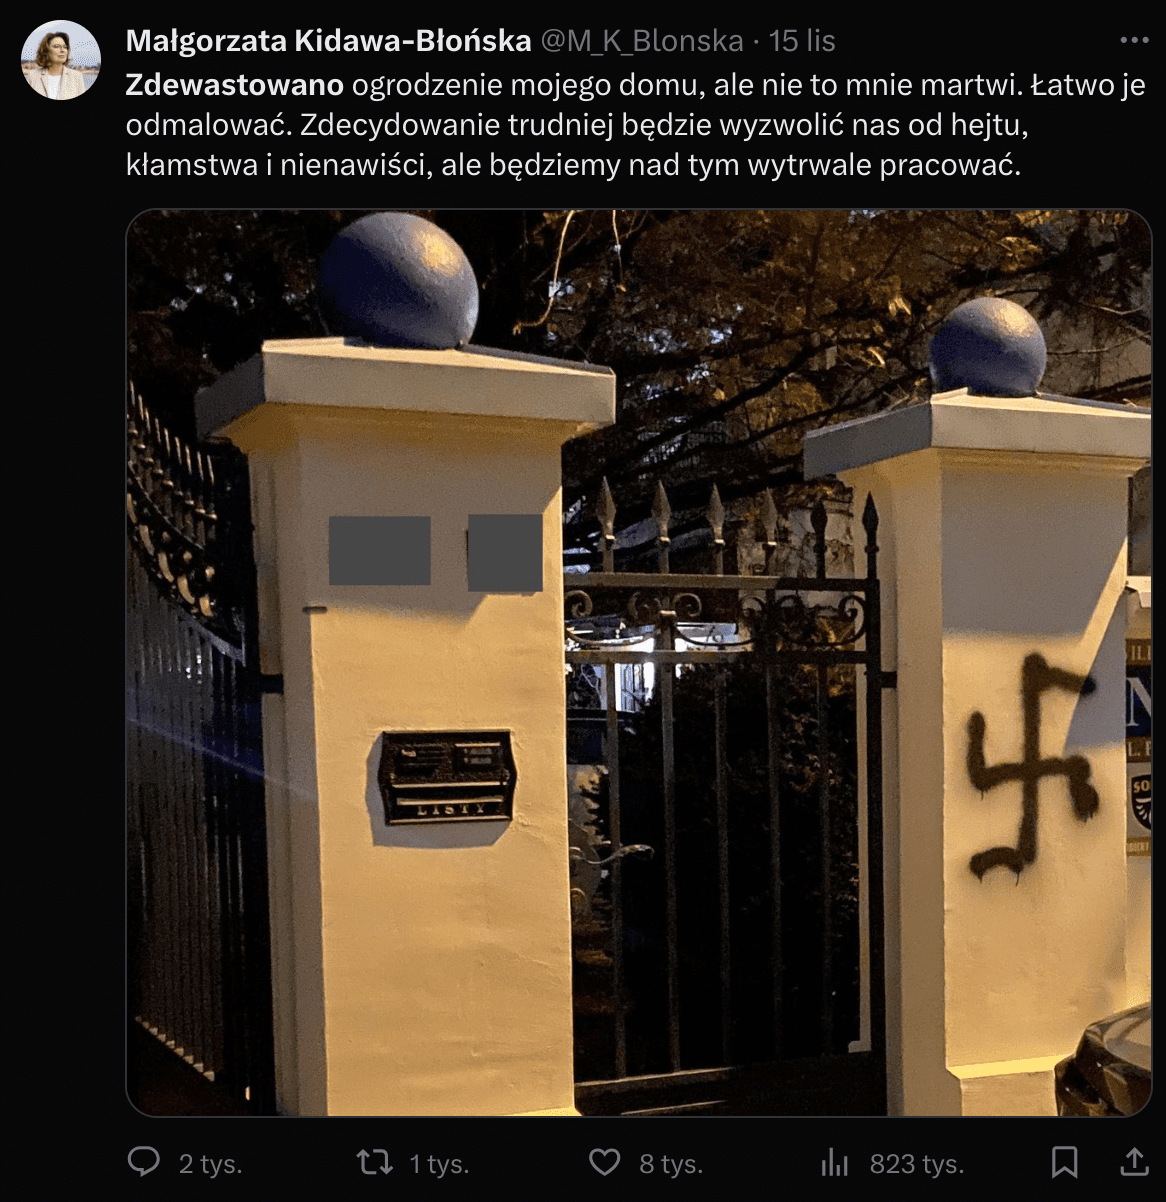 Post Małgorzaty Kidawy-Błońskiej o zdewastowany ogrodzeniu domu z symbolem swastyki